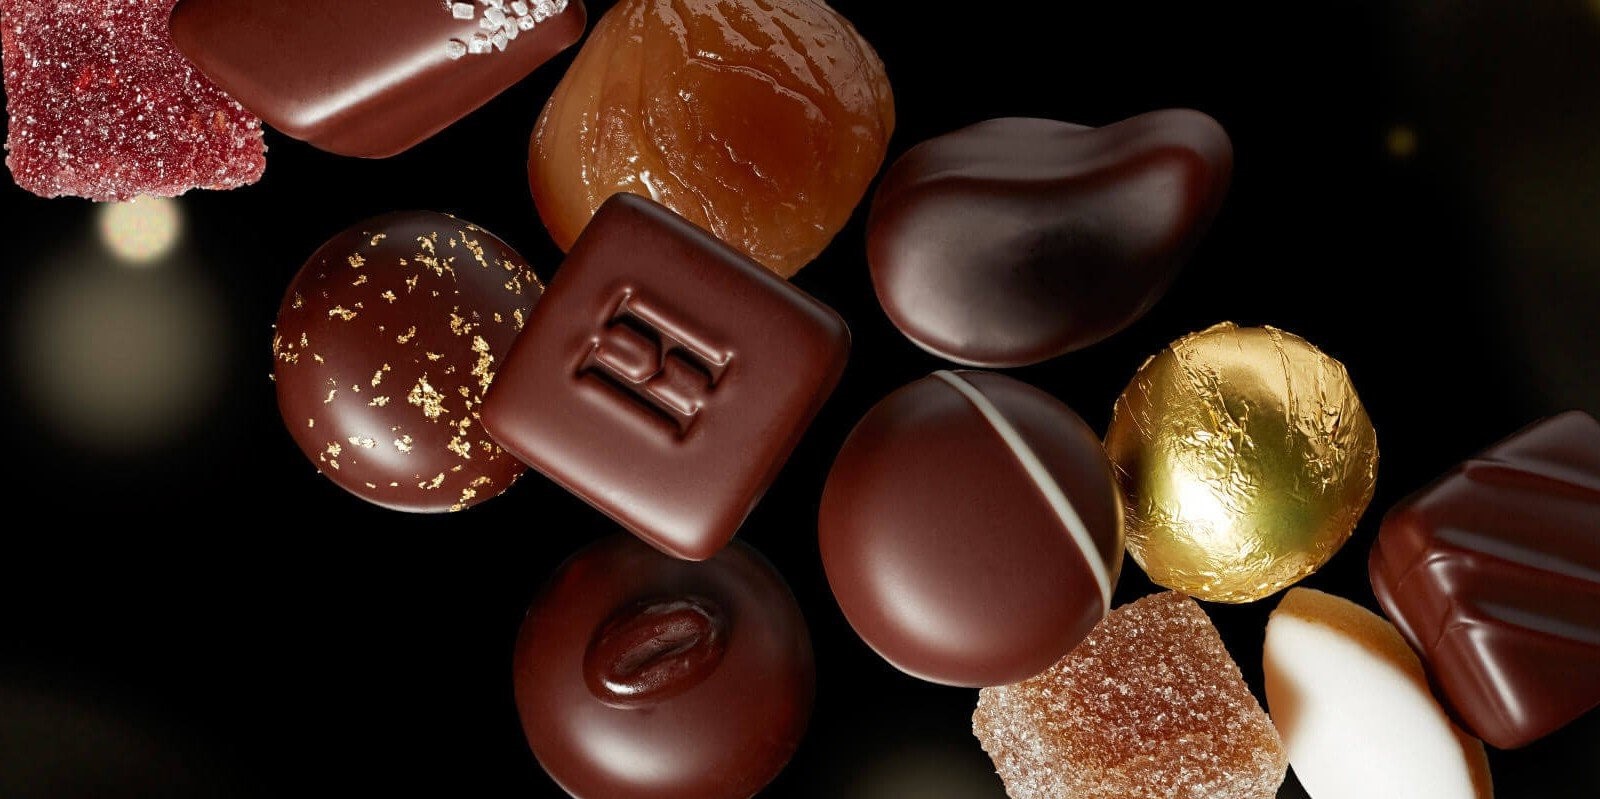 Les organisateurs souhaitent promouvoir le chocolat du monde entier et faire découvrir au public le chocolat qu’ils ne peuvent normalement pas acheter.